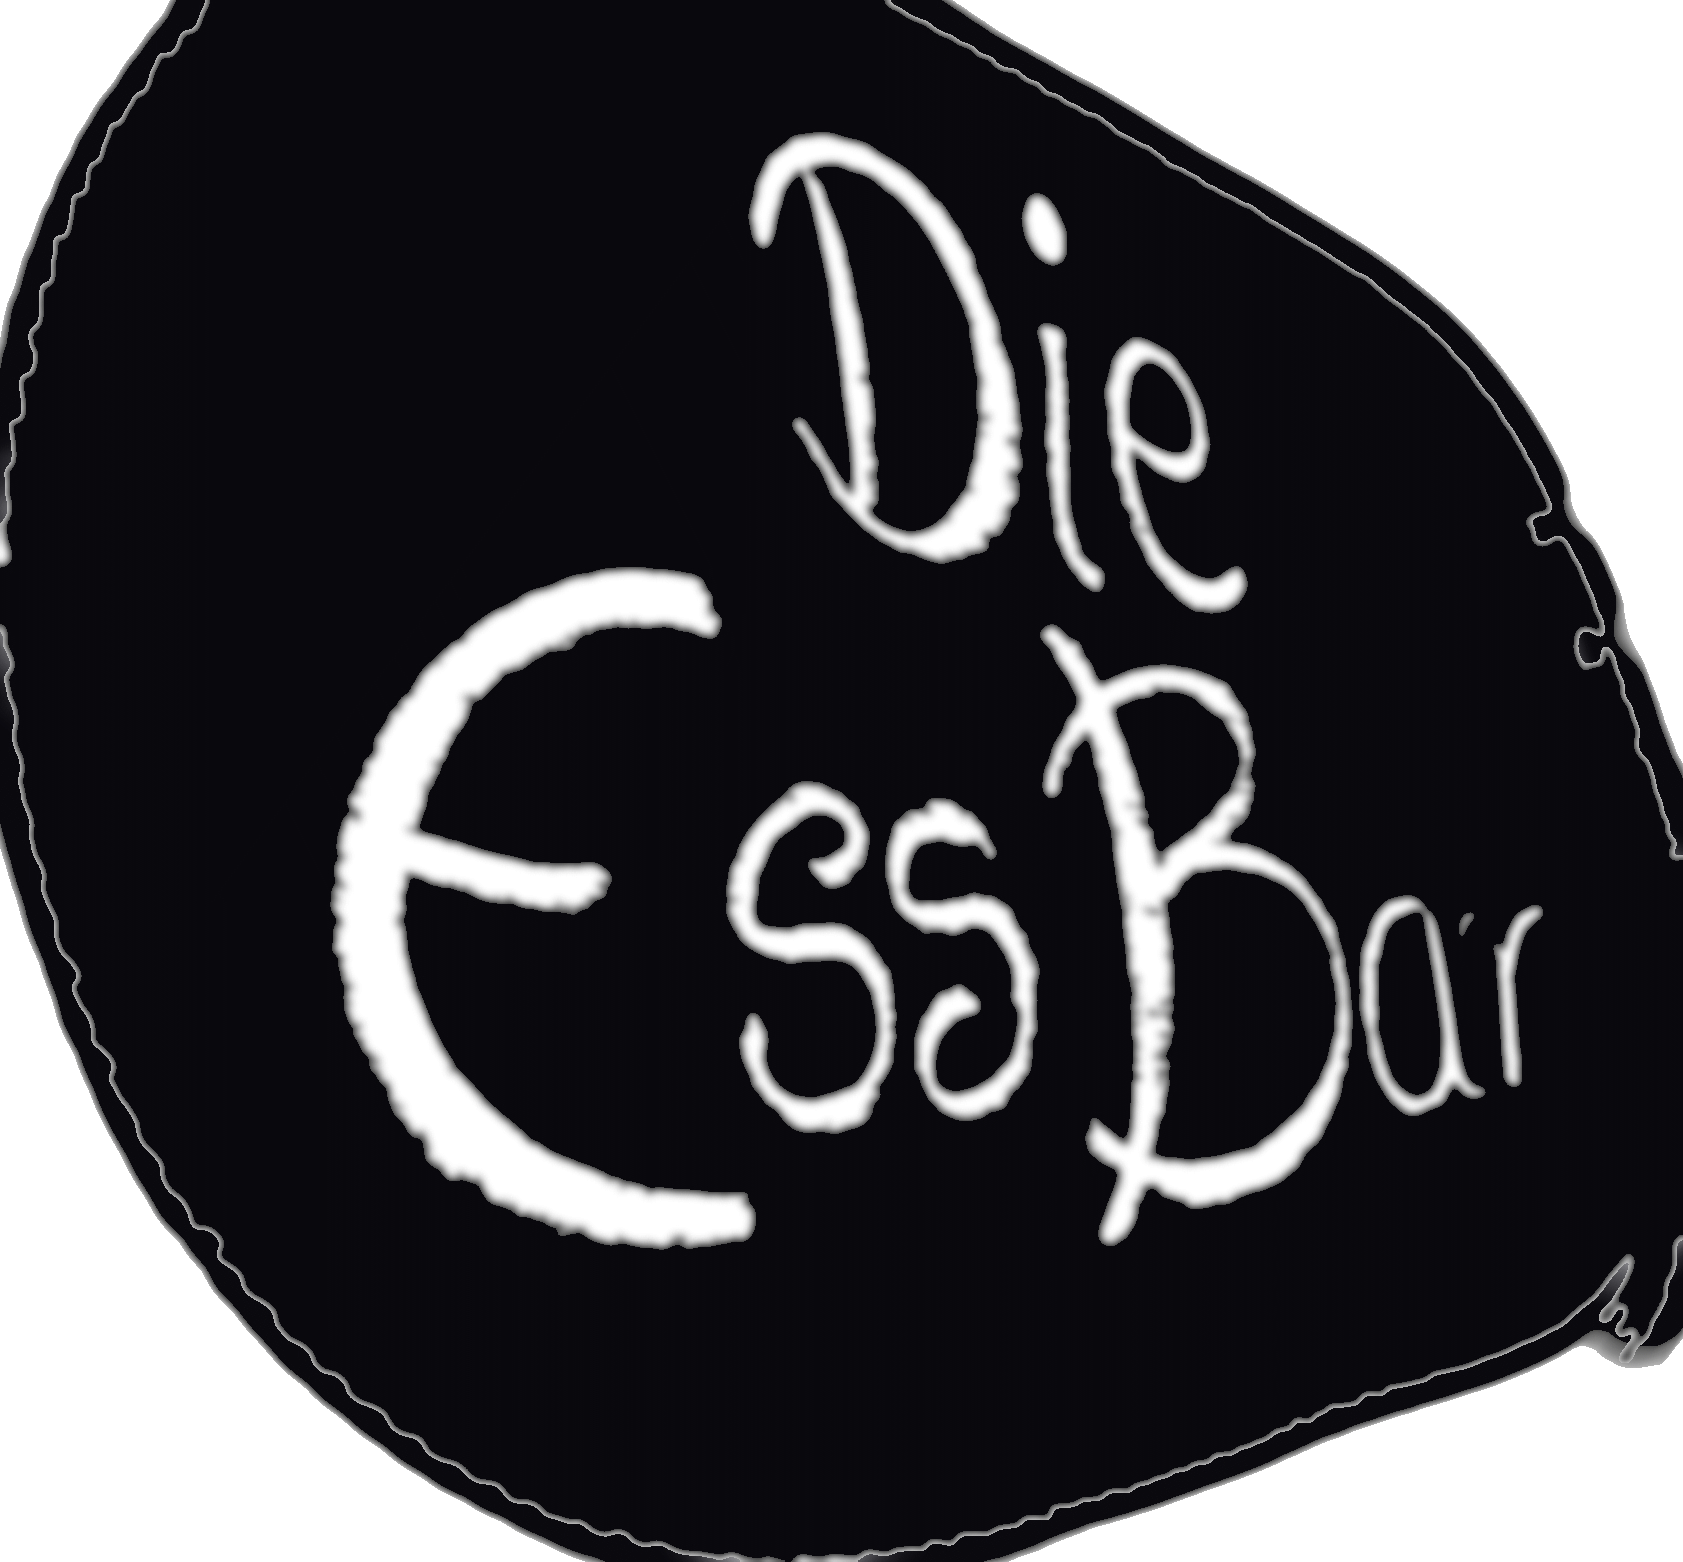 Die EssBar - Food Trailer & Catering